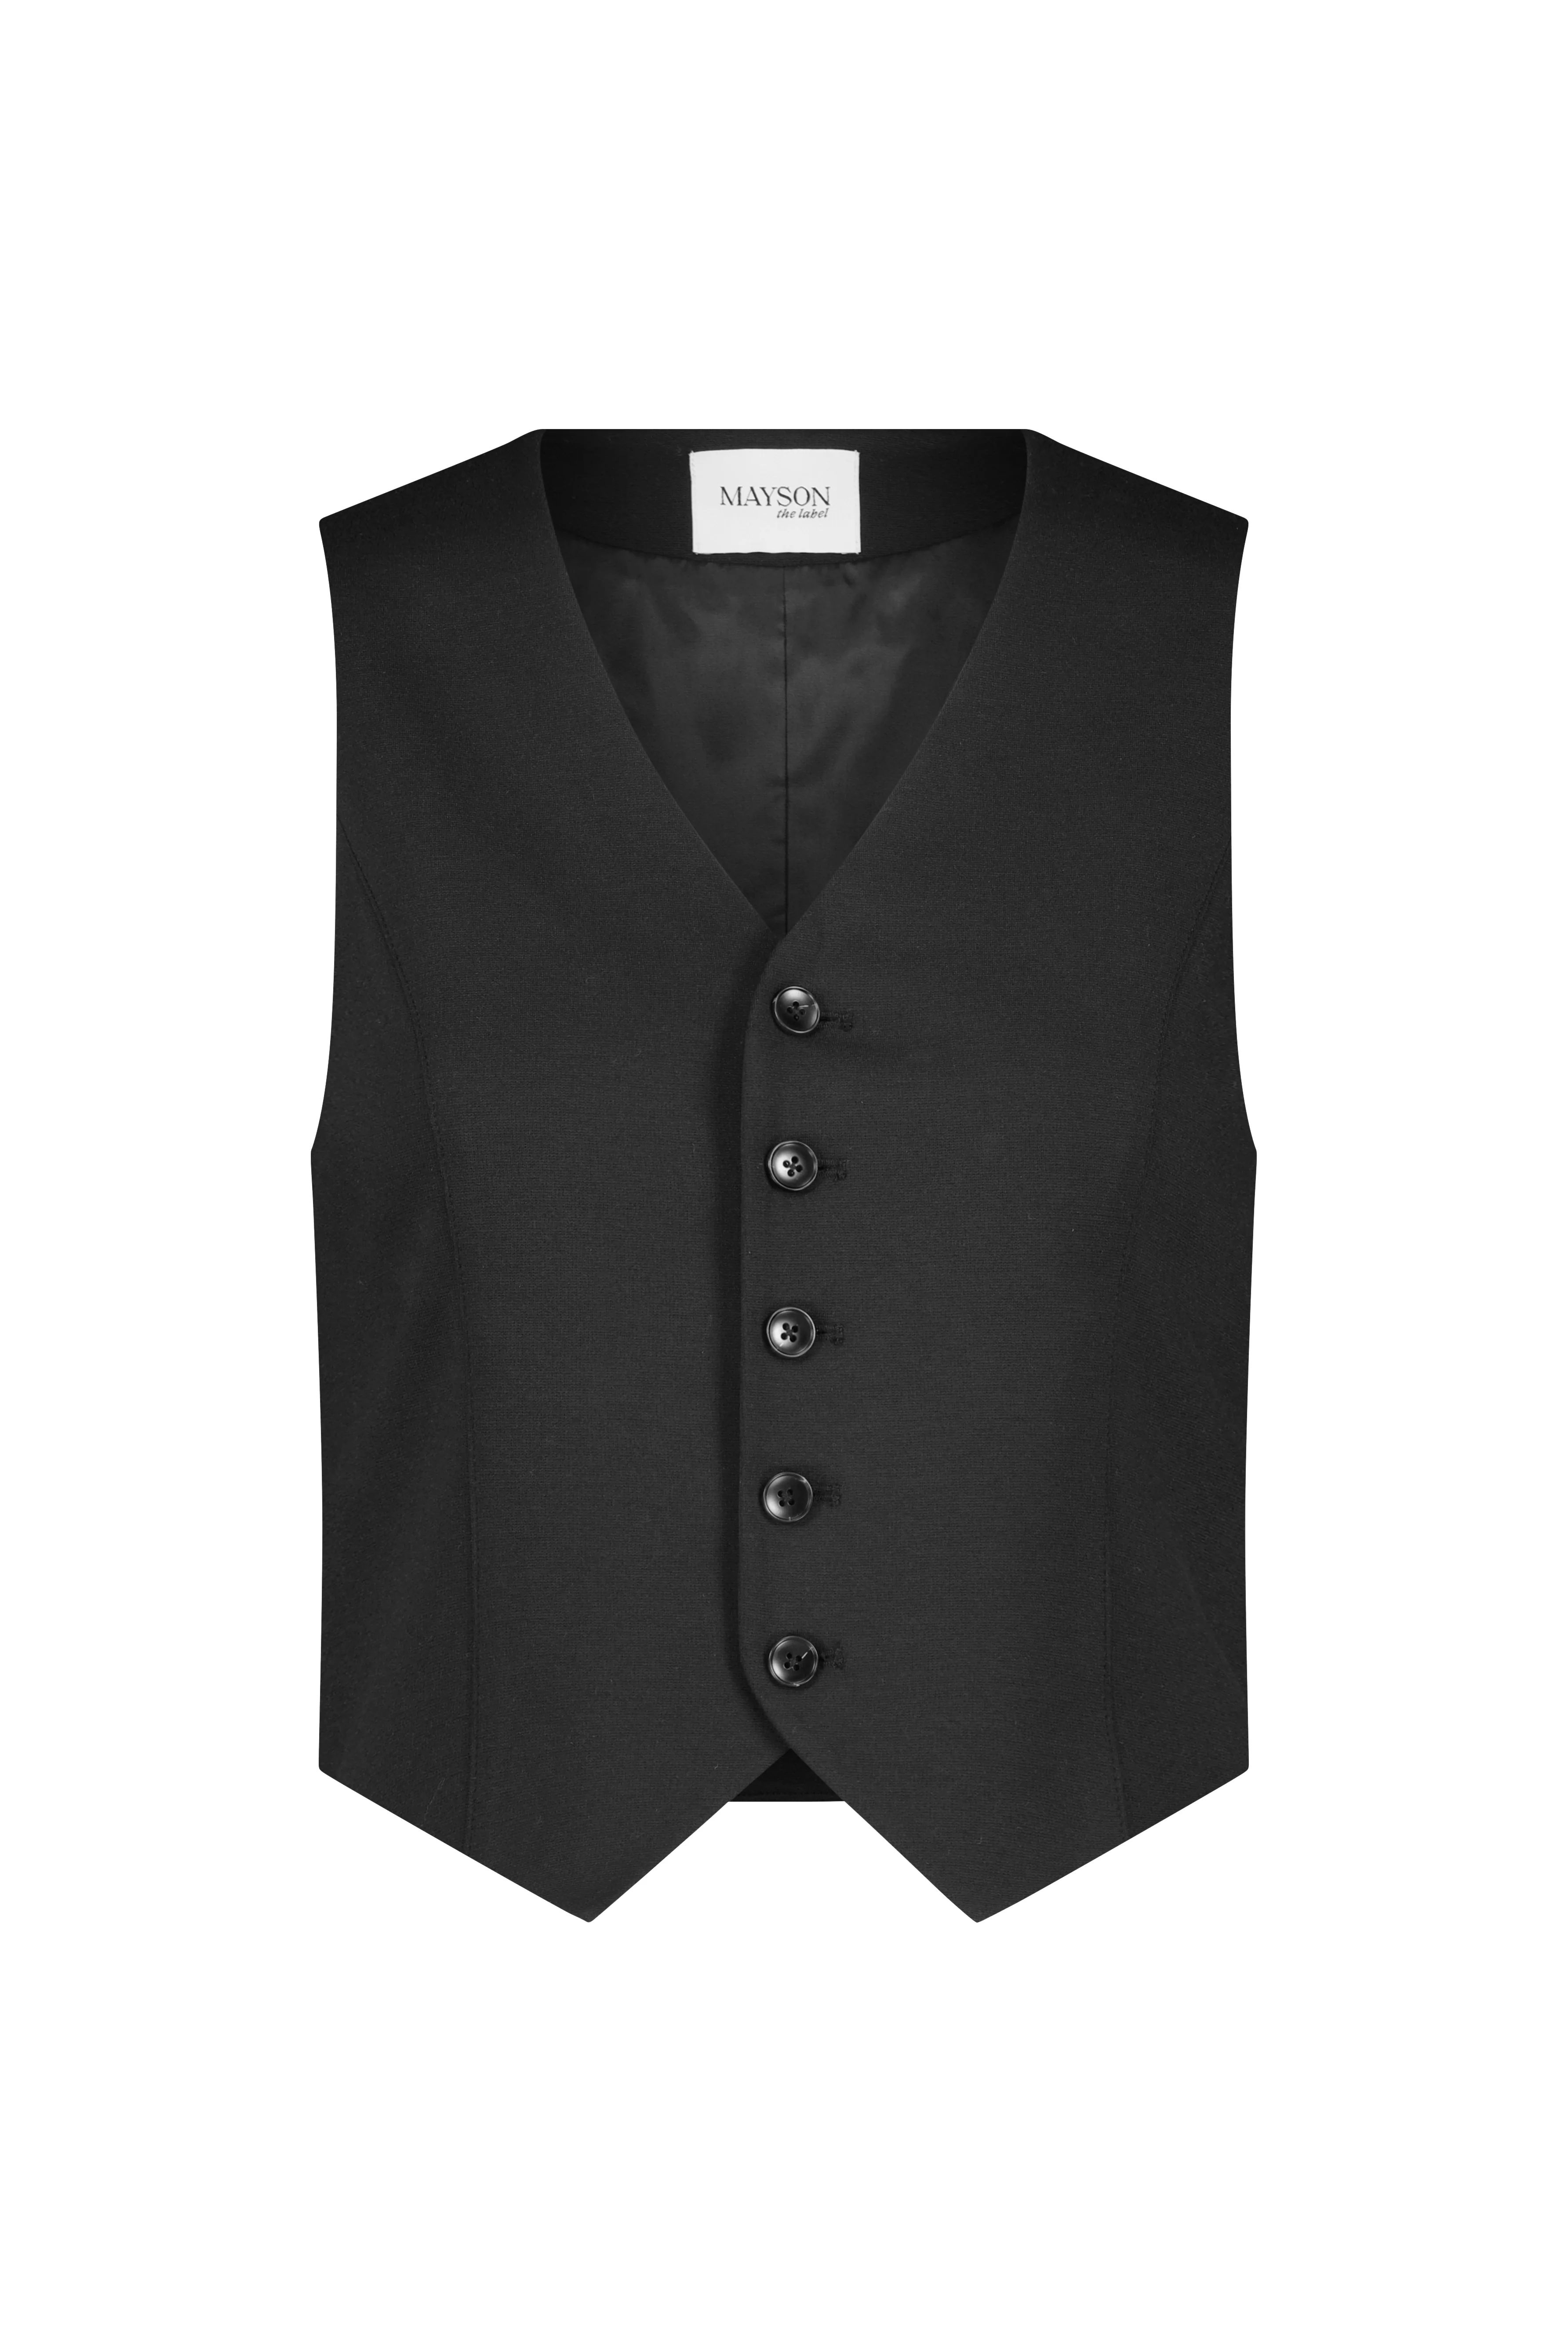 Slim-Fit Button-Front Vest | MAYSON the label